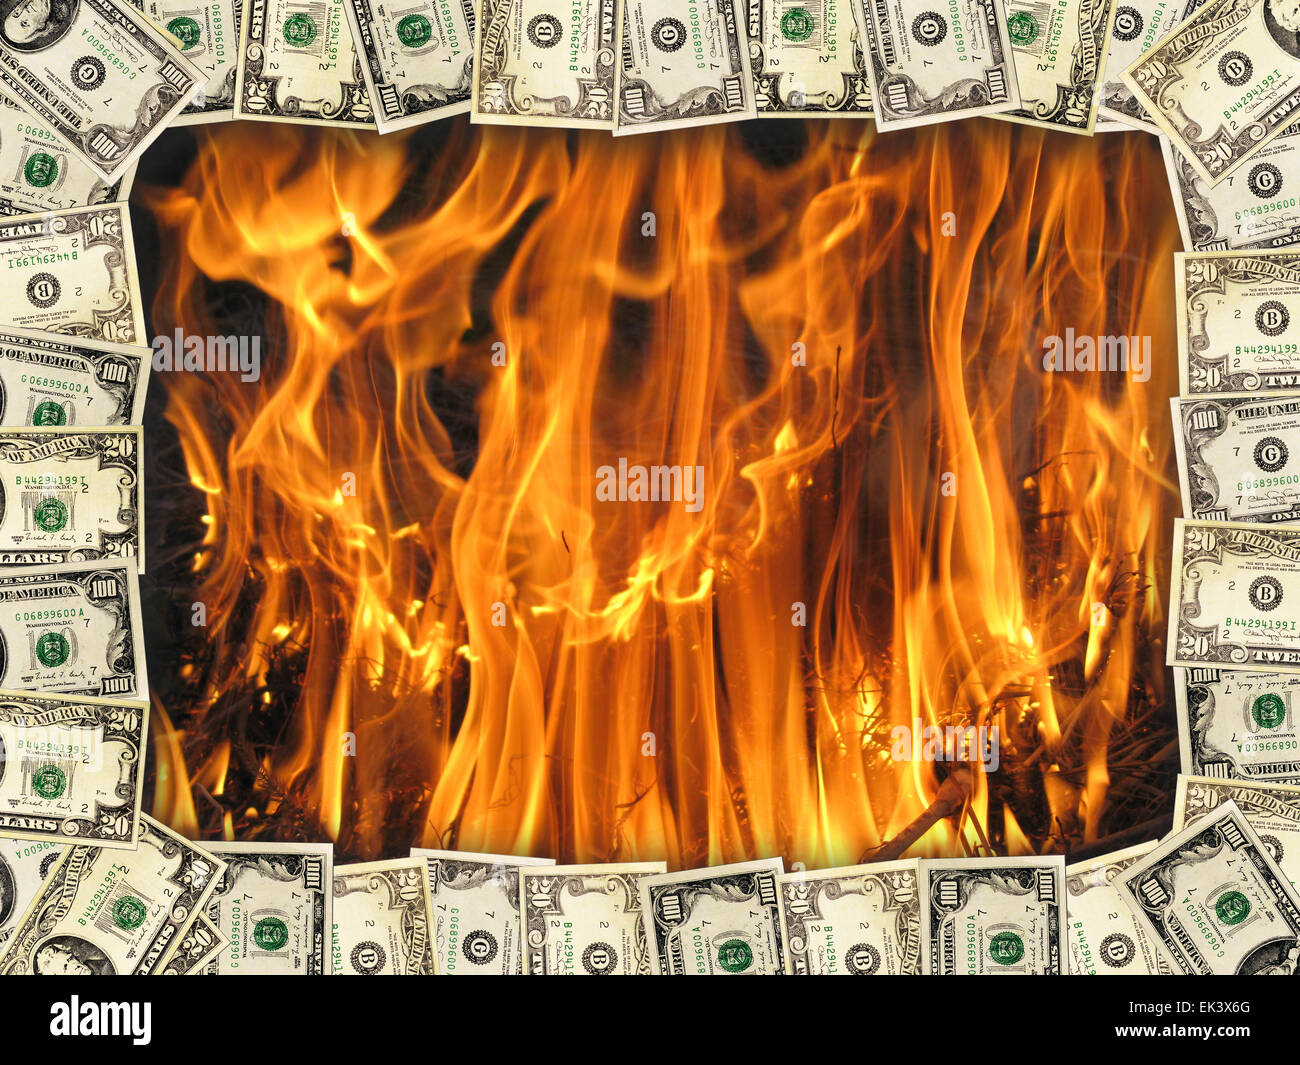 Rahmen von US-Dollar auf dem Hintergrund der Flamme Stockfoto